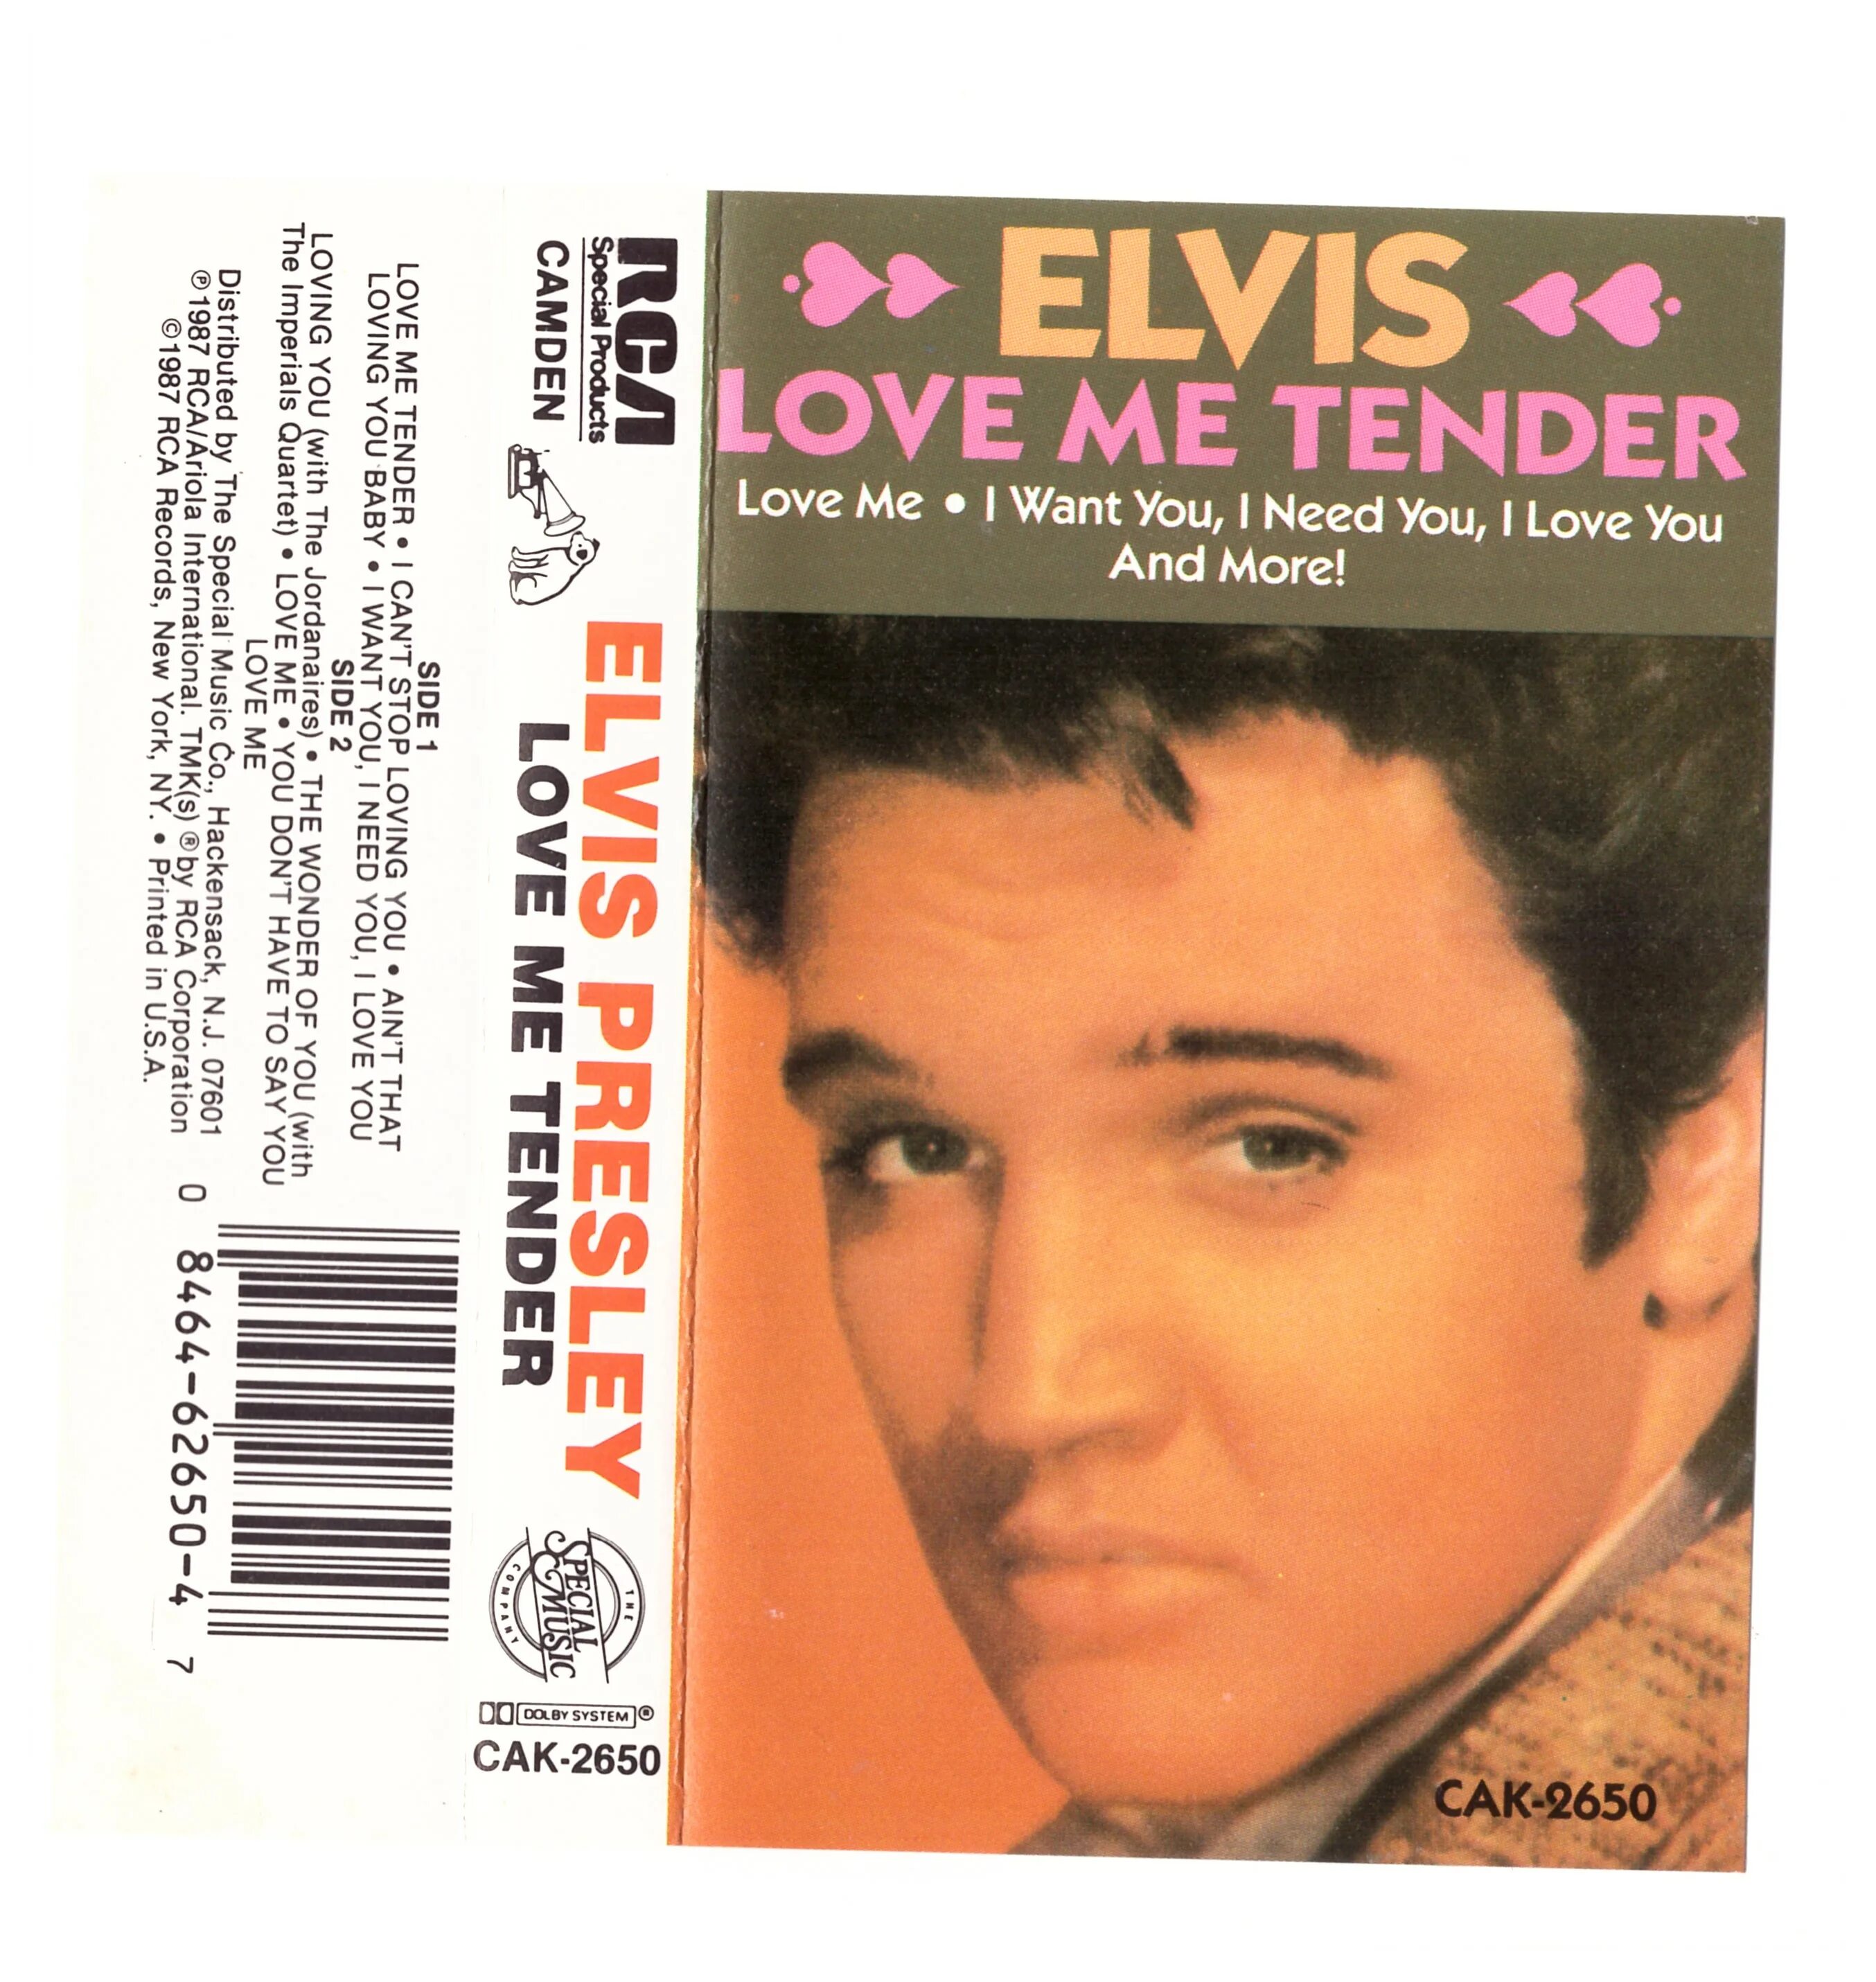 Пресли love me tender. Элвис Пресли Love me. Elvis Presley - Love me обложка. Elvis Presley Love me tender обложка. Elvis аудиокассета.